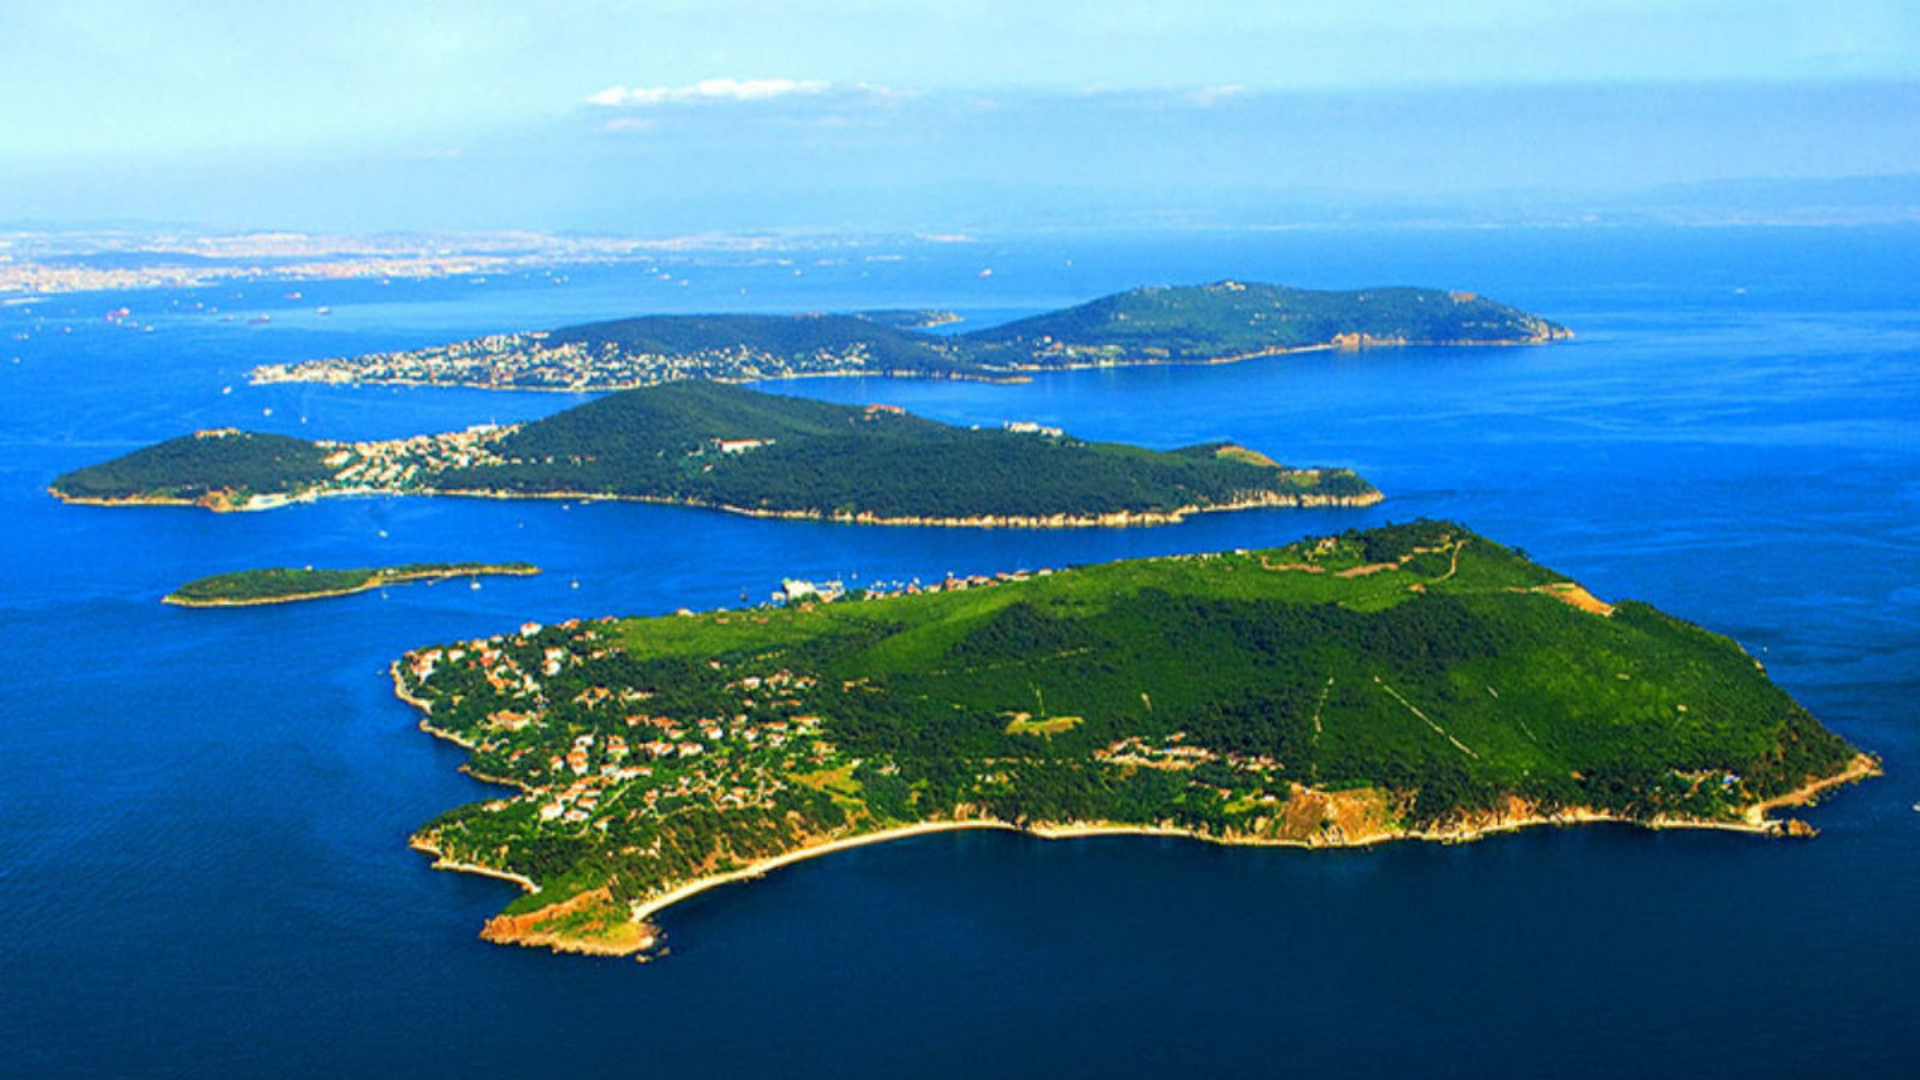 Princess islands. Пляжи в Стамбуле на острове Адалар. Принцевы острова в Стамбуле. Адалар Принцевы острова. Остров Баюкада Турция.